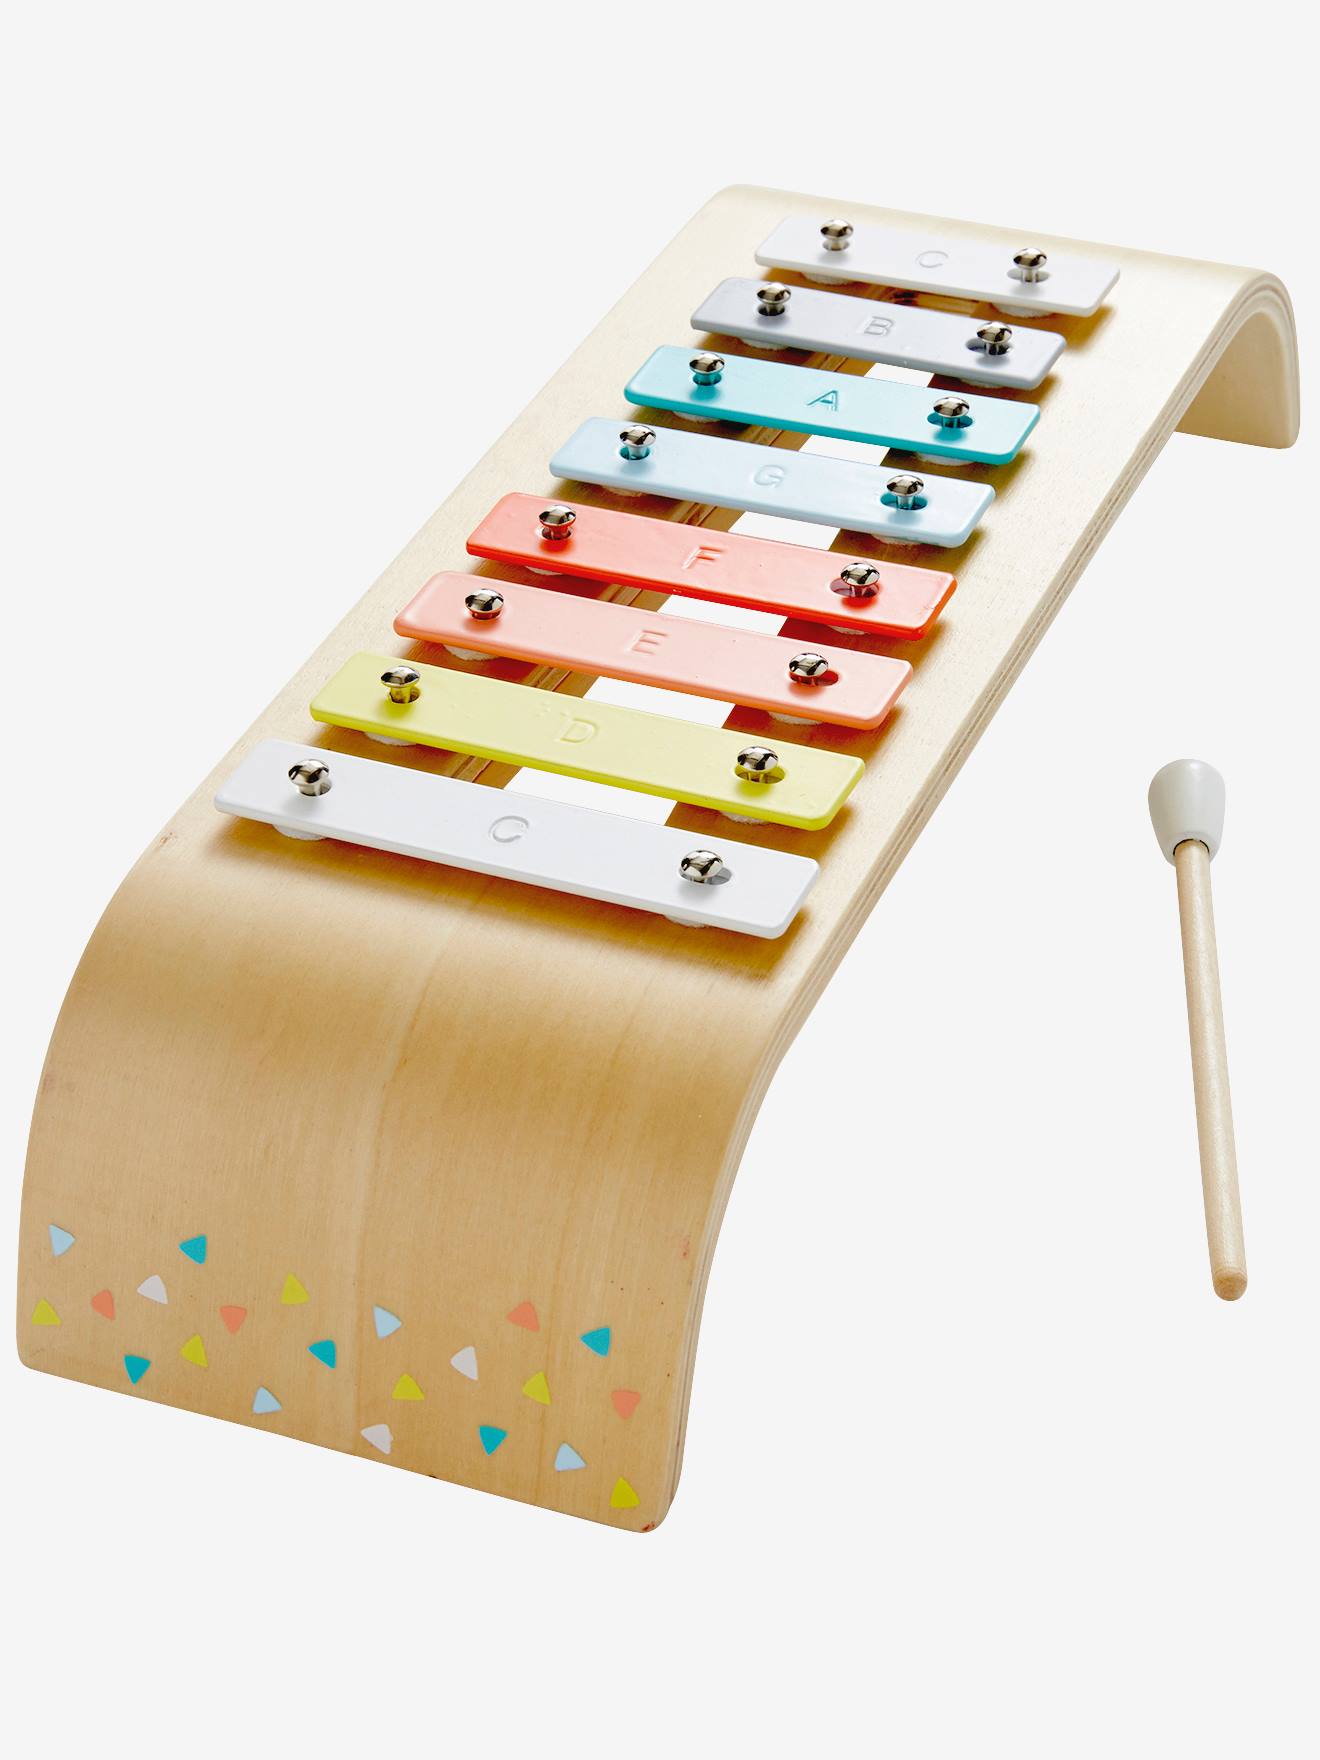 Xylophone Haba pour chambre enfant - Les Enfants du Design